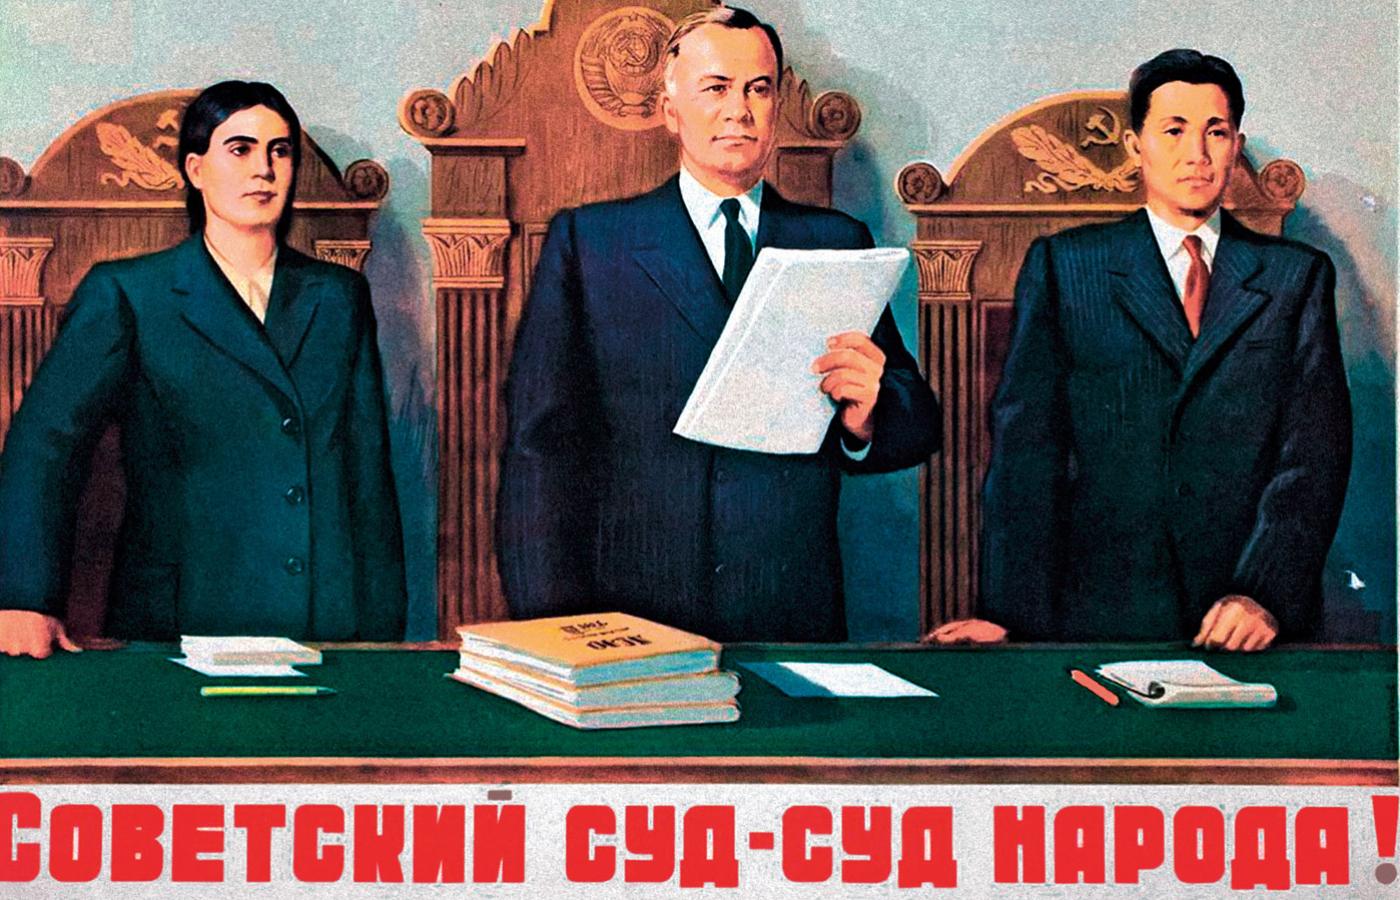 „Sąd radziecki – sądem ludu!” – głosi hasło na plakacie z późnych lat 40.